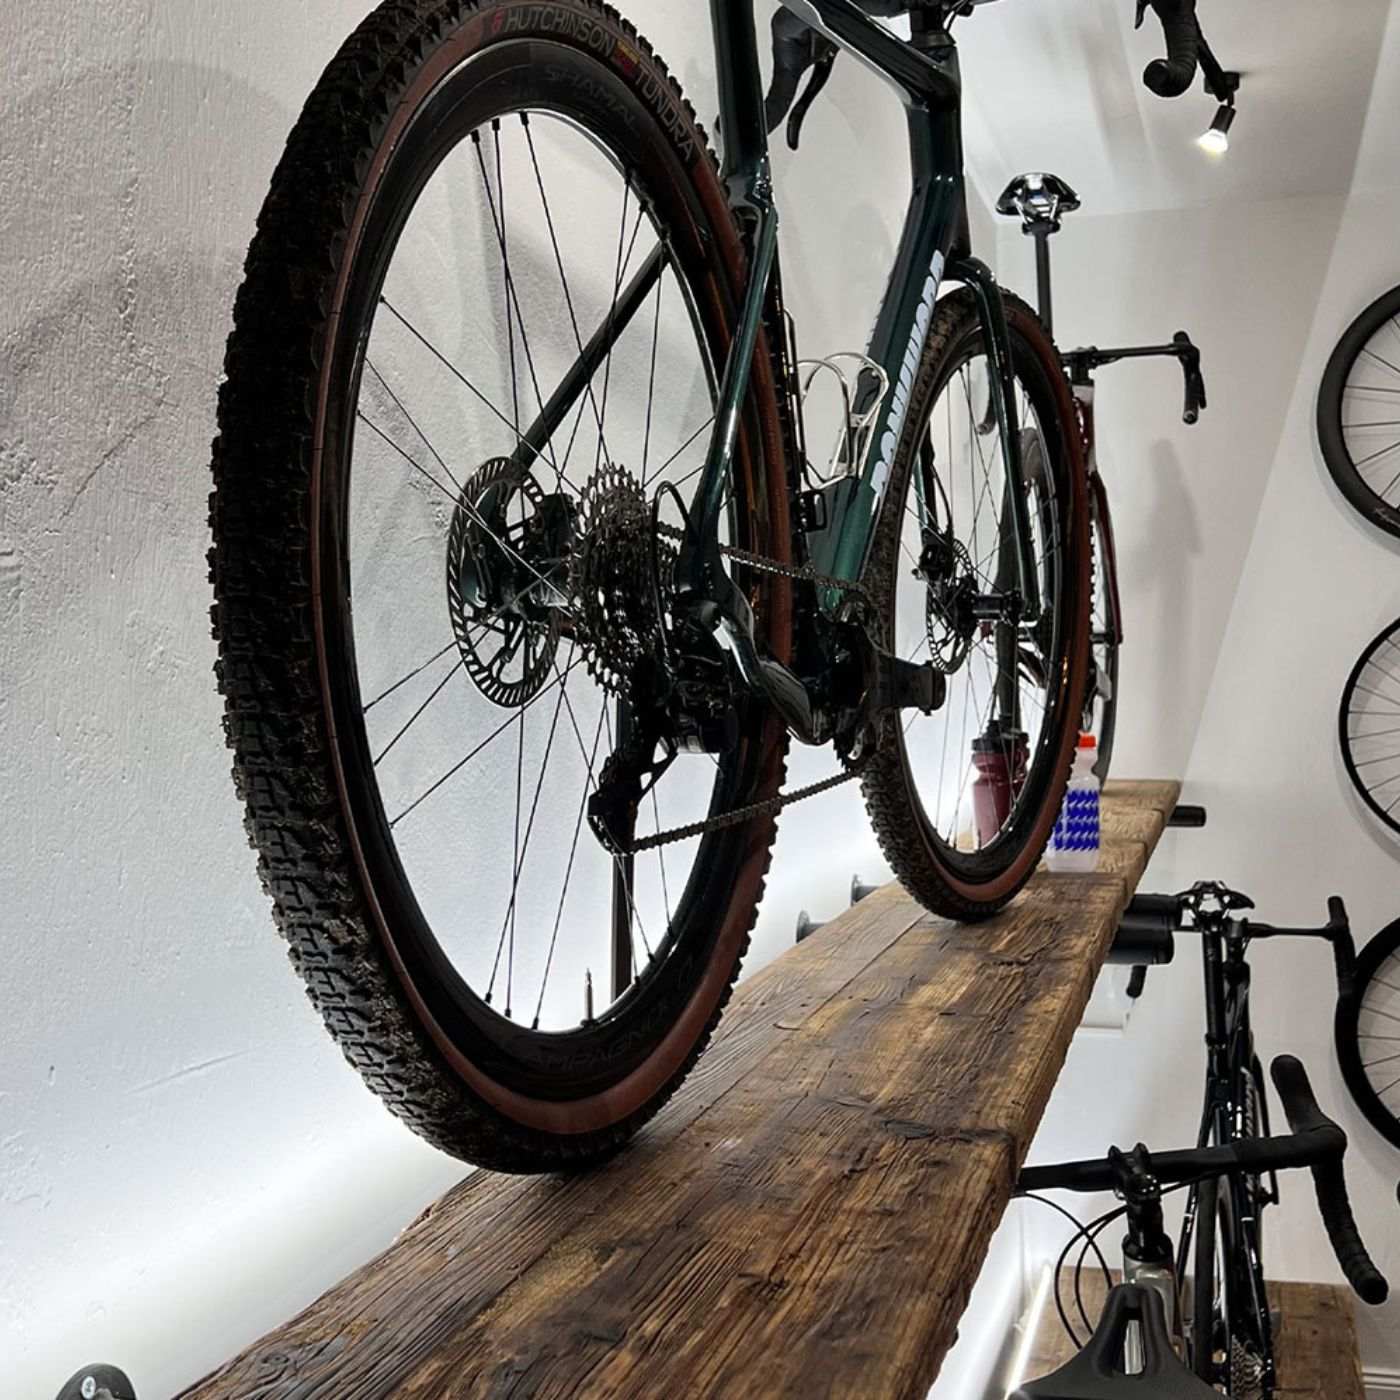 Nachhaltig und stilvoll: Unser Fahrradständer aus hochwertigem Altholz/Massivholz ist nicht nur funktional, sondern auch eine ästhetische Bereicherung. Handgefertigt und umweltfreundlich, bietet er eine ideale Verbindung von Natur und Zweckmäßigkeit für Ihr Fahrrad